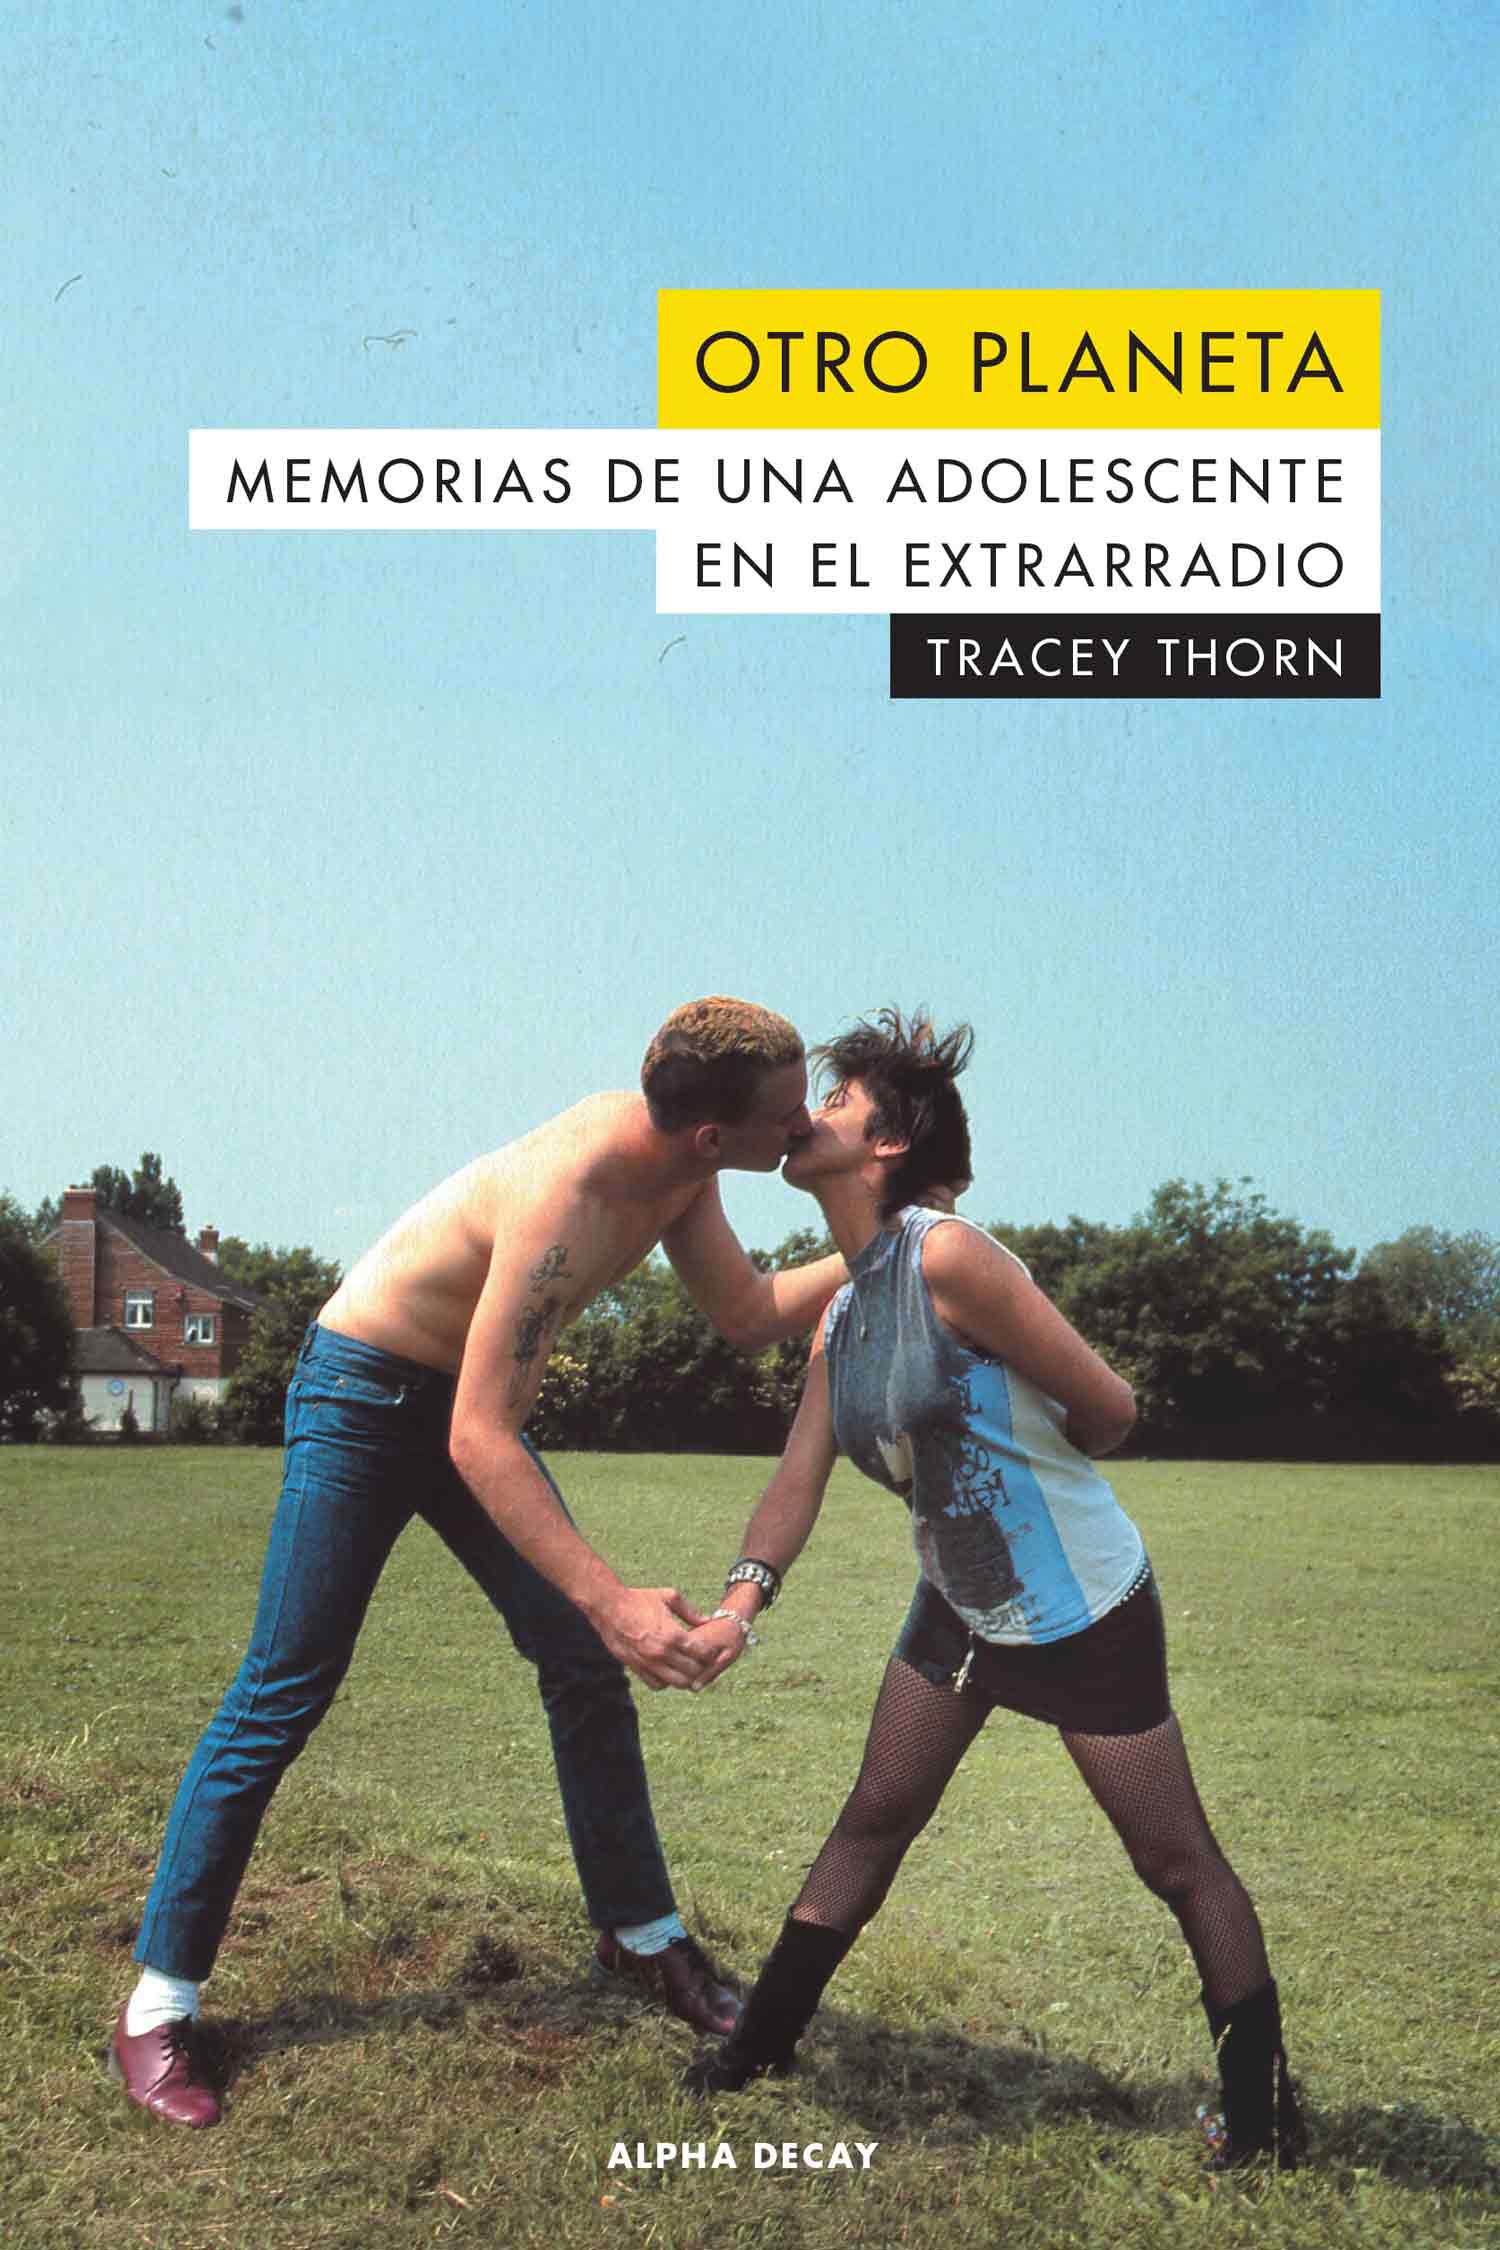 Tracey Thorn: “Fueron los adultos los que, con tanto alboroto, hicieron que la escena punk fuera mucho más excitante” 1